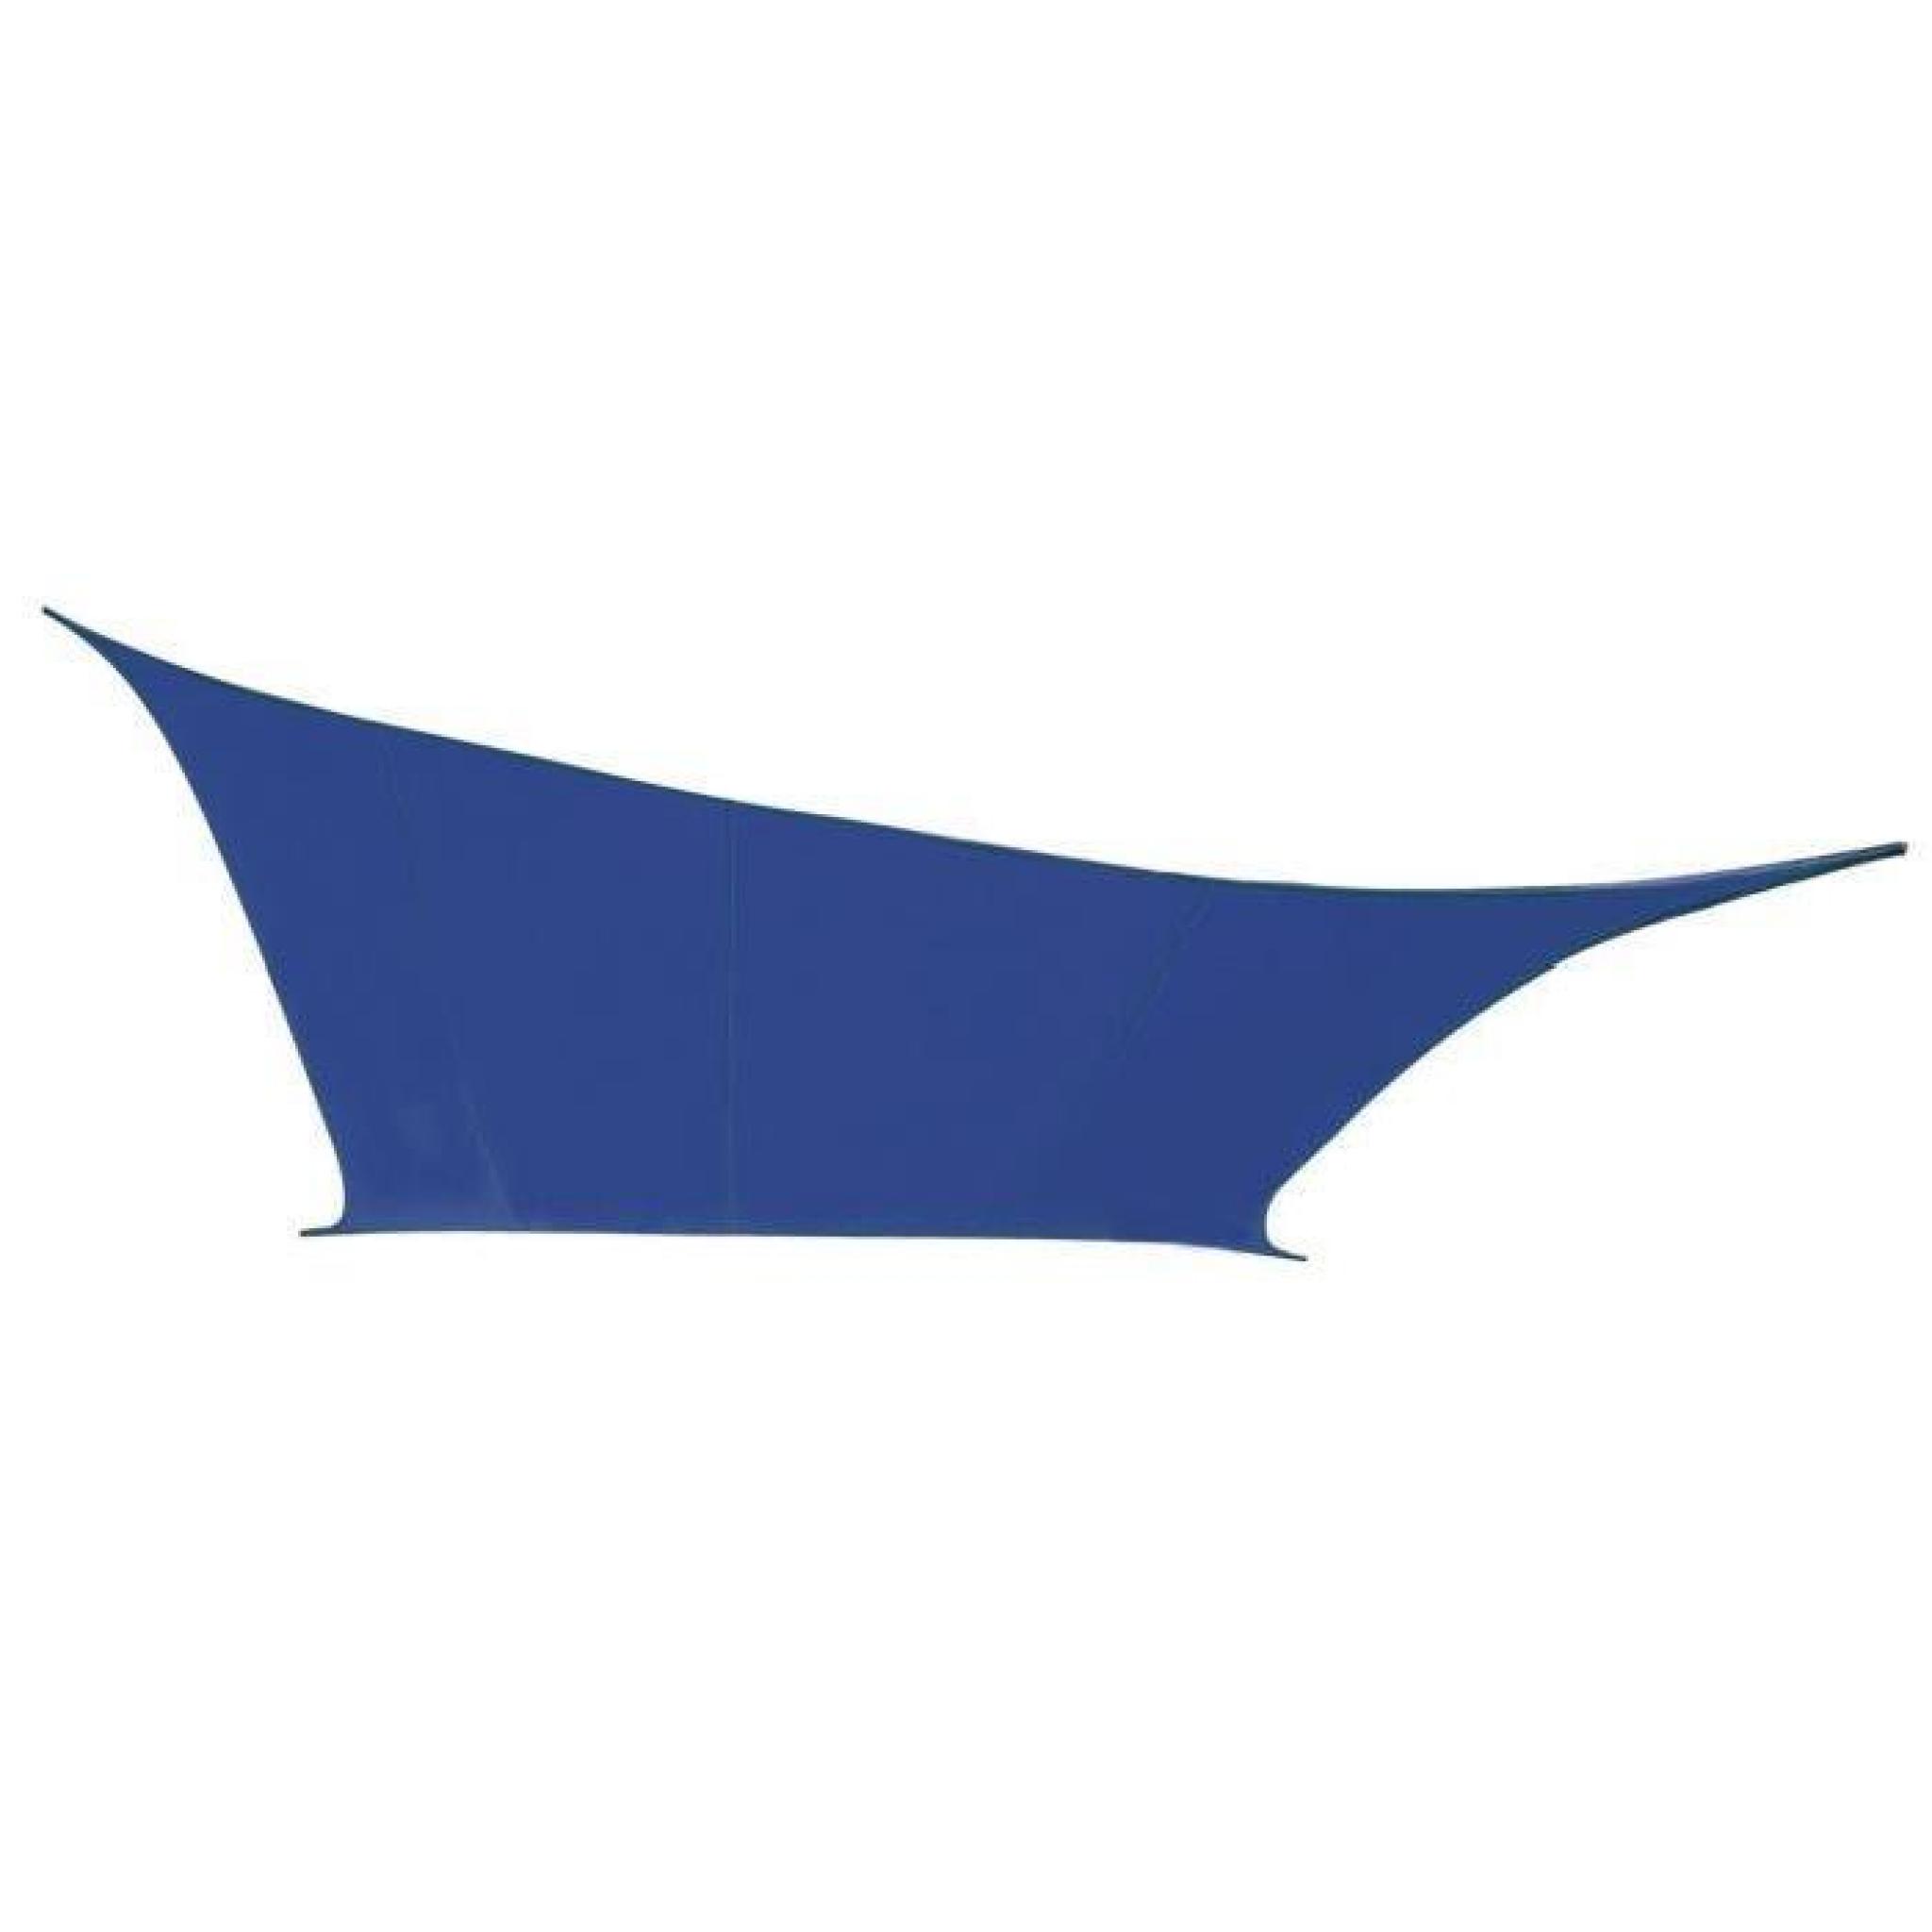 Voile d'Ombrage Bleu Carré 3m - Déperlant - 140g/m2 - Kookaburra pas cher